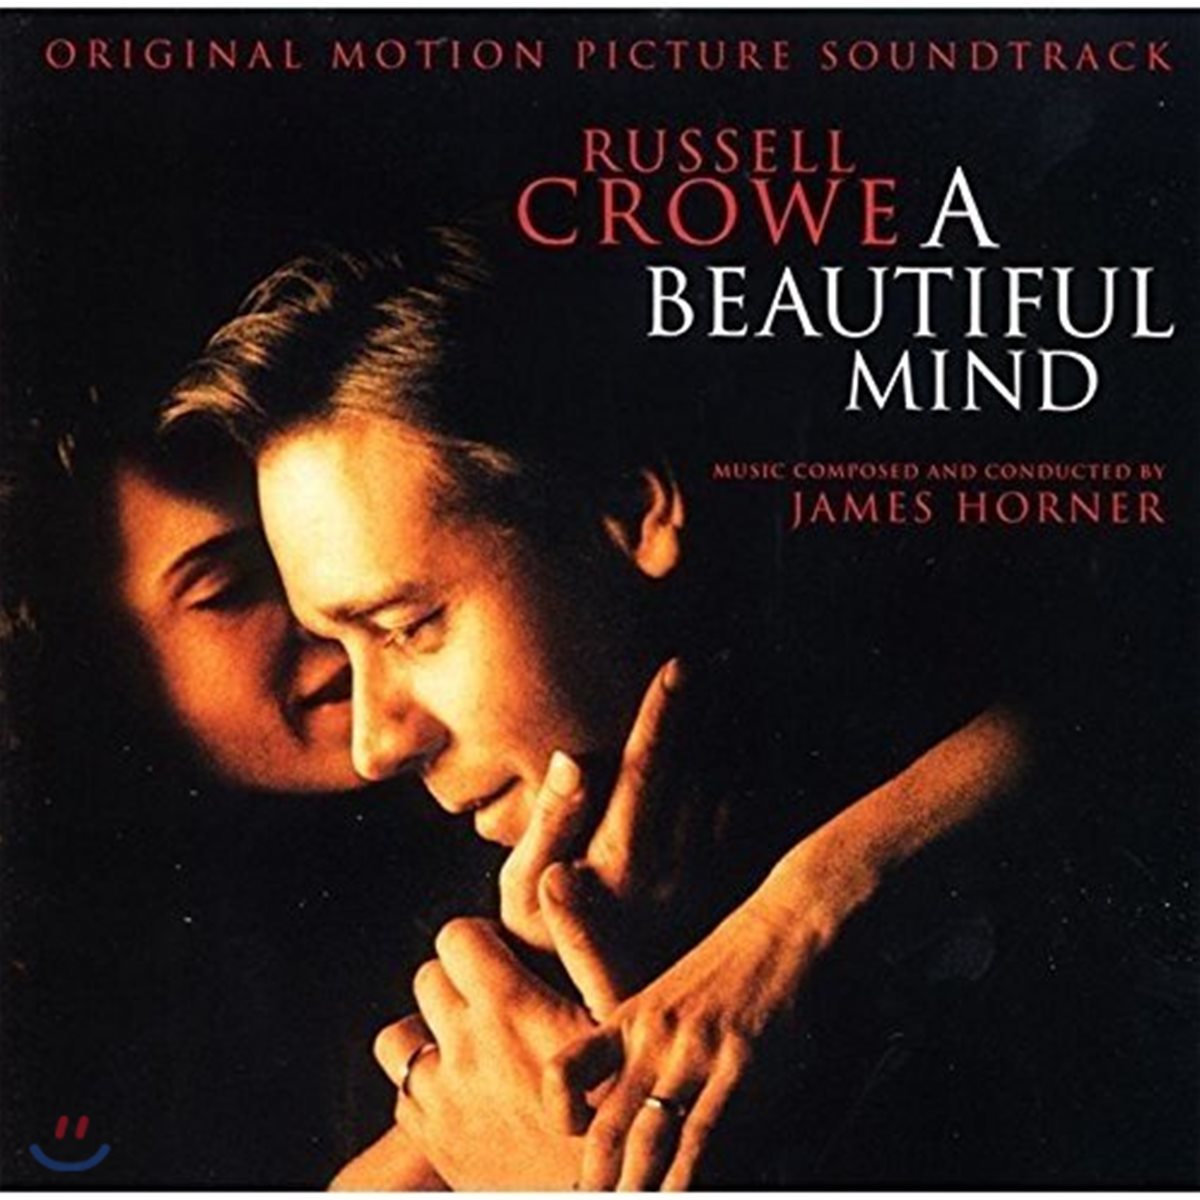 뷰티풀 마인드 영화음악 (A Beautiful Mind OST by James Horner 제임스 호너)